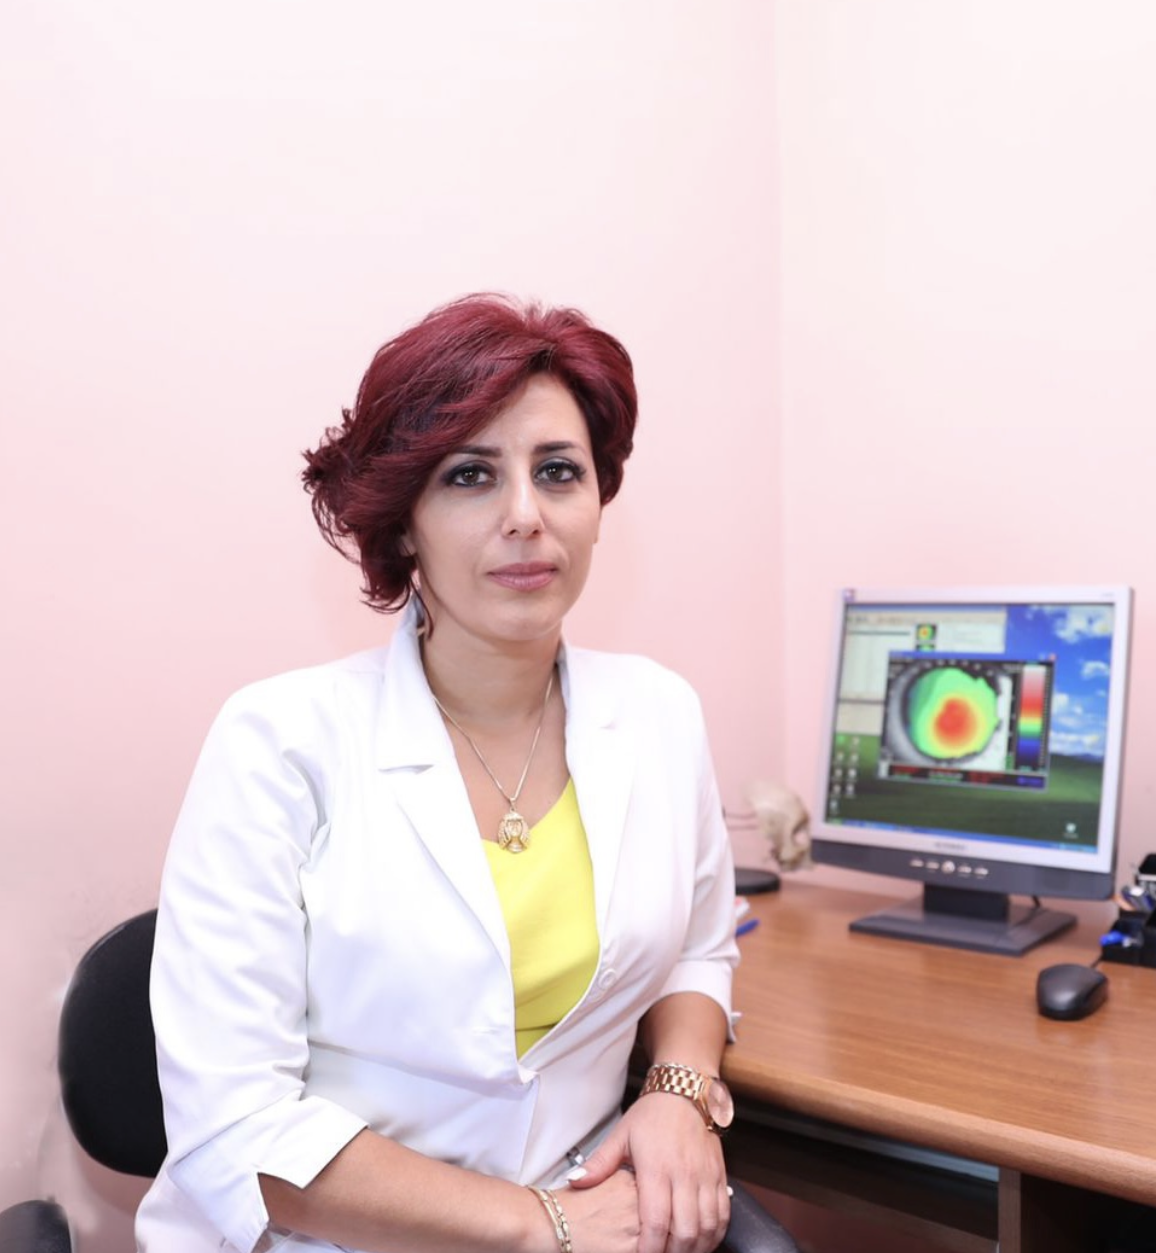 Dr. Lusine Vanyan